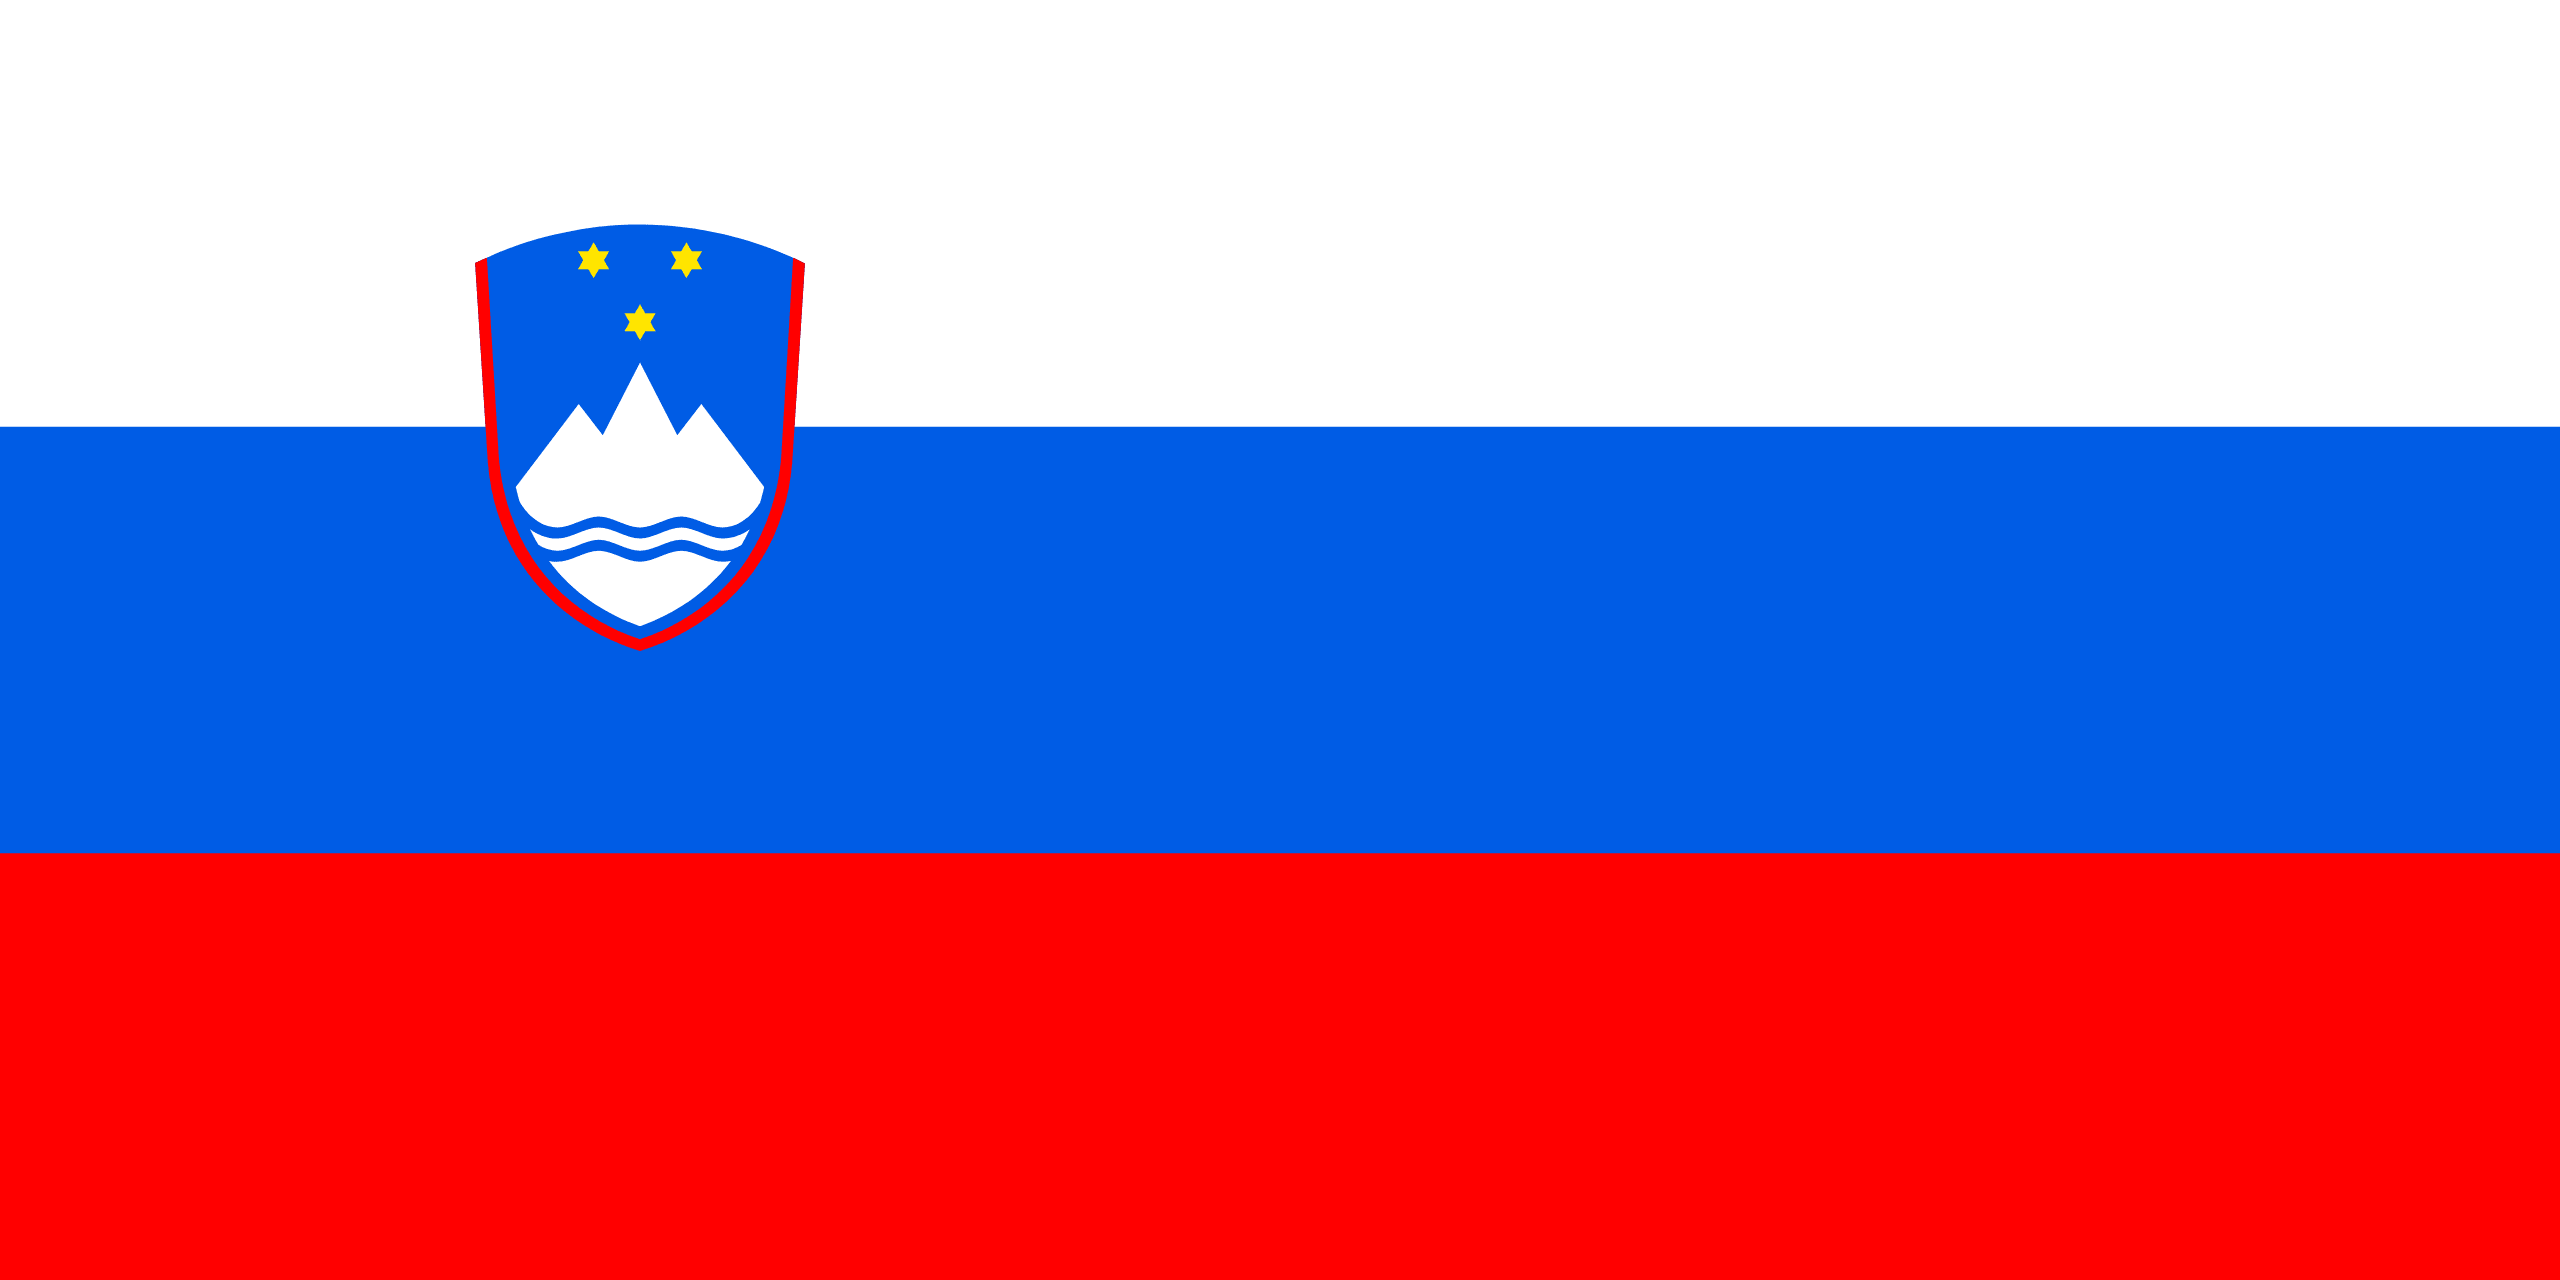 スロベニア共和国 flag